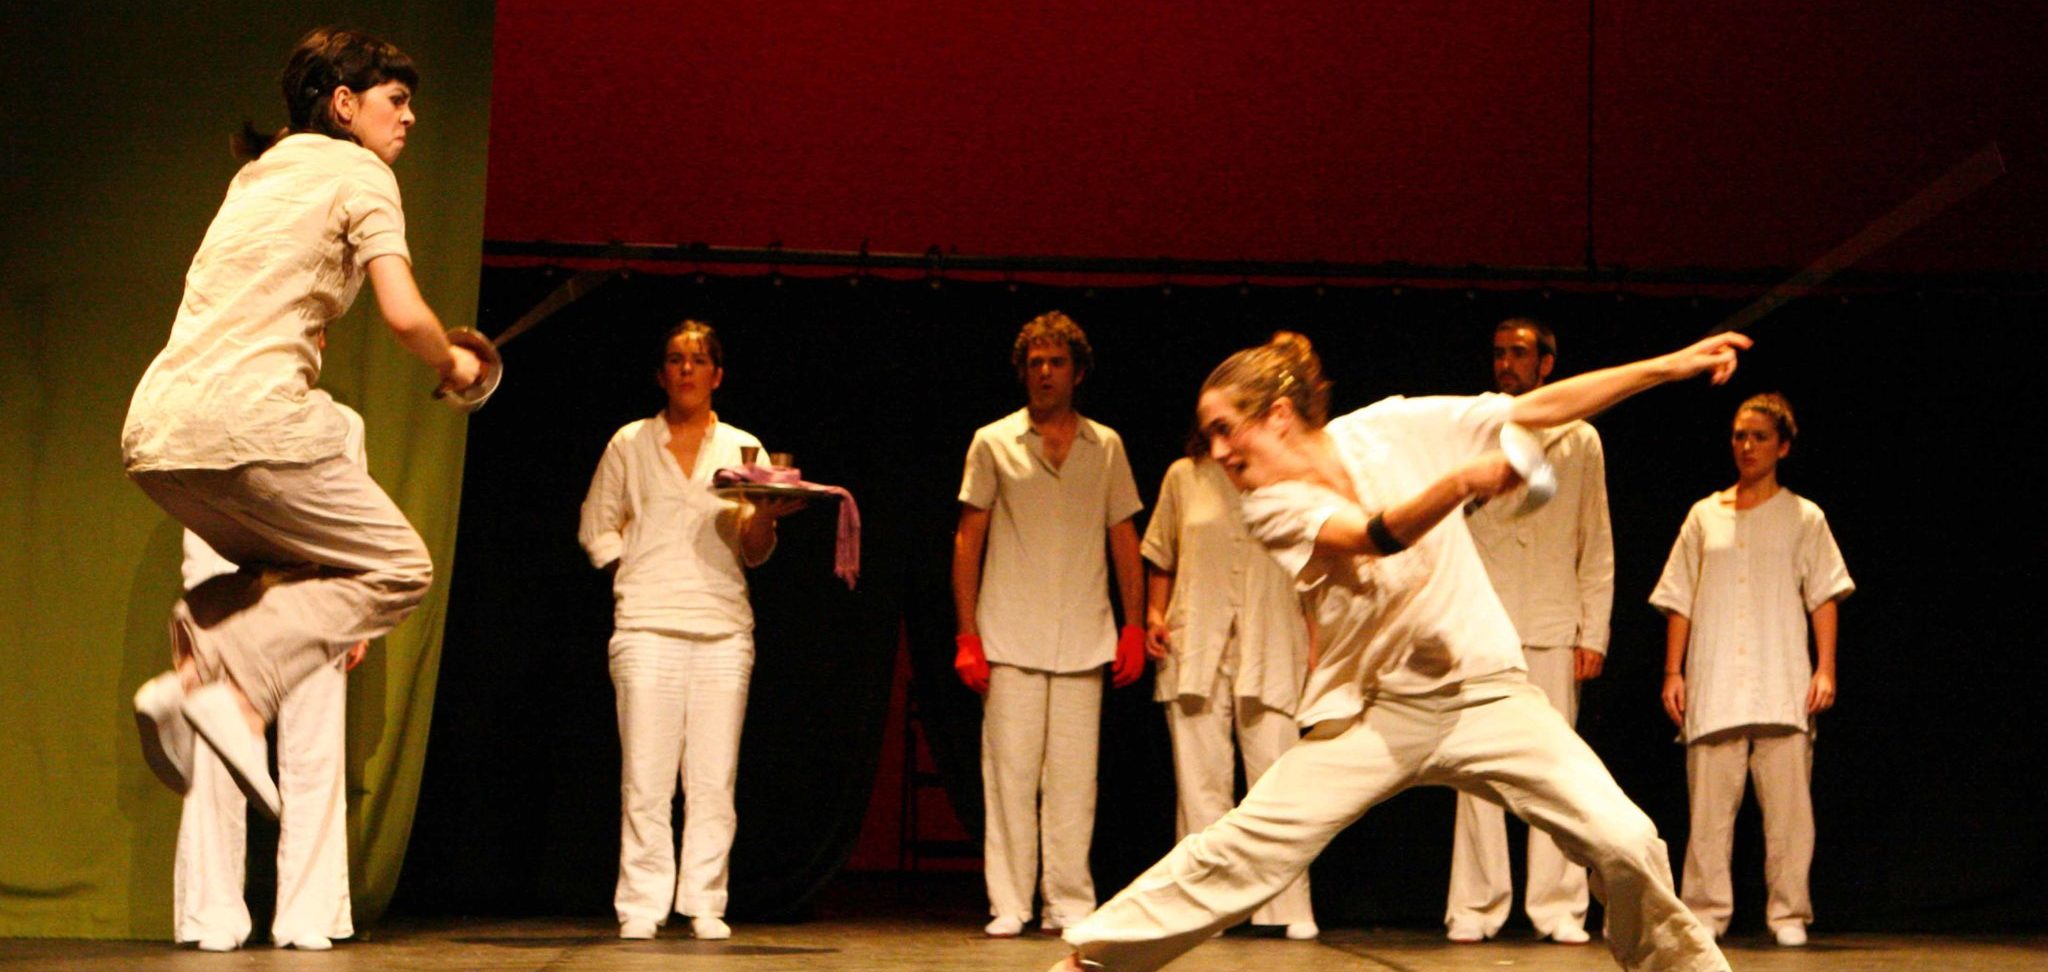 Esgrima combat escènic escola teatre interpretació barcelona el timbal